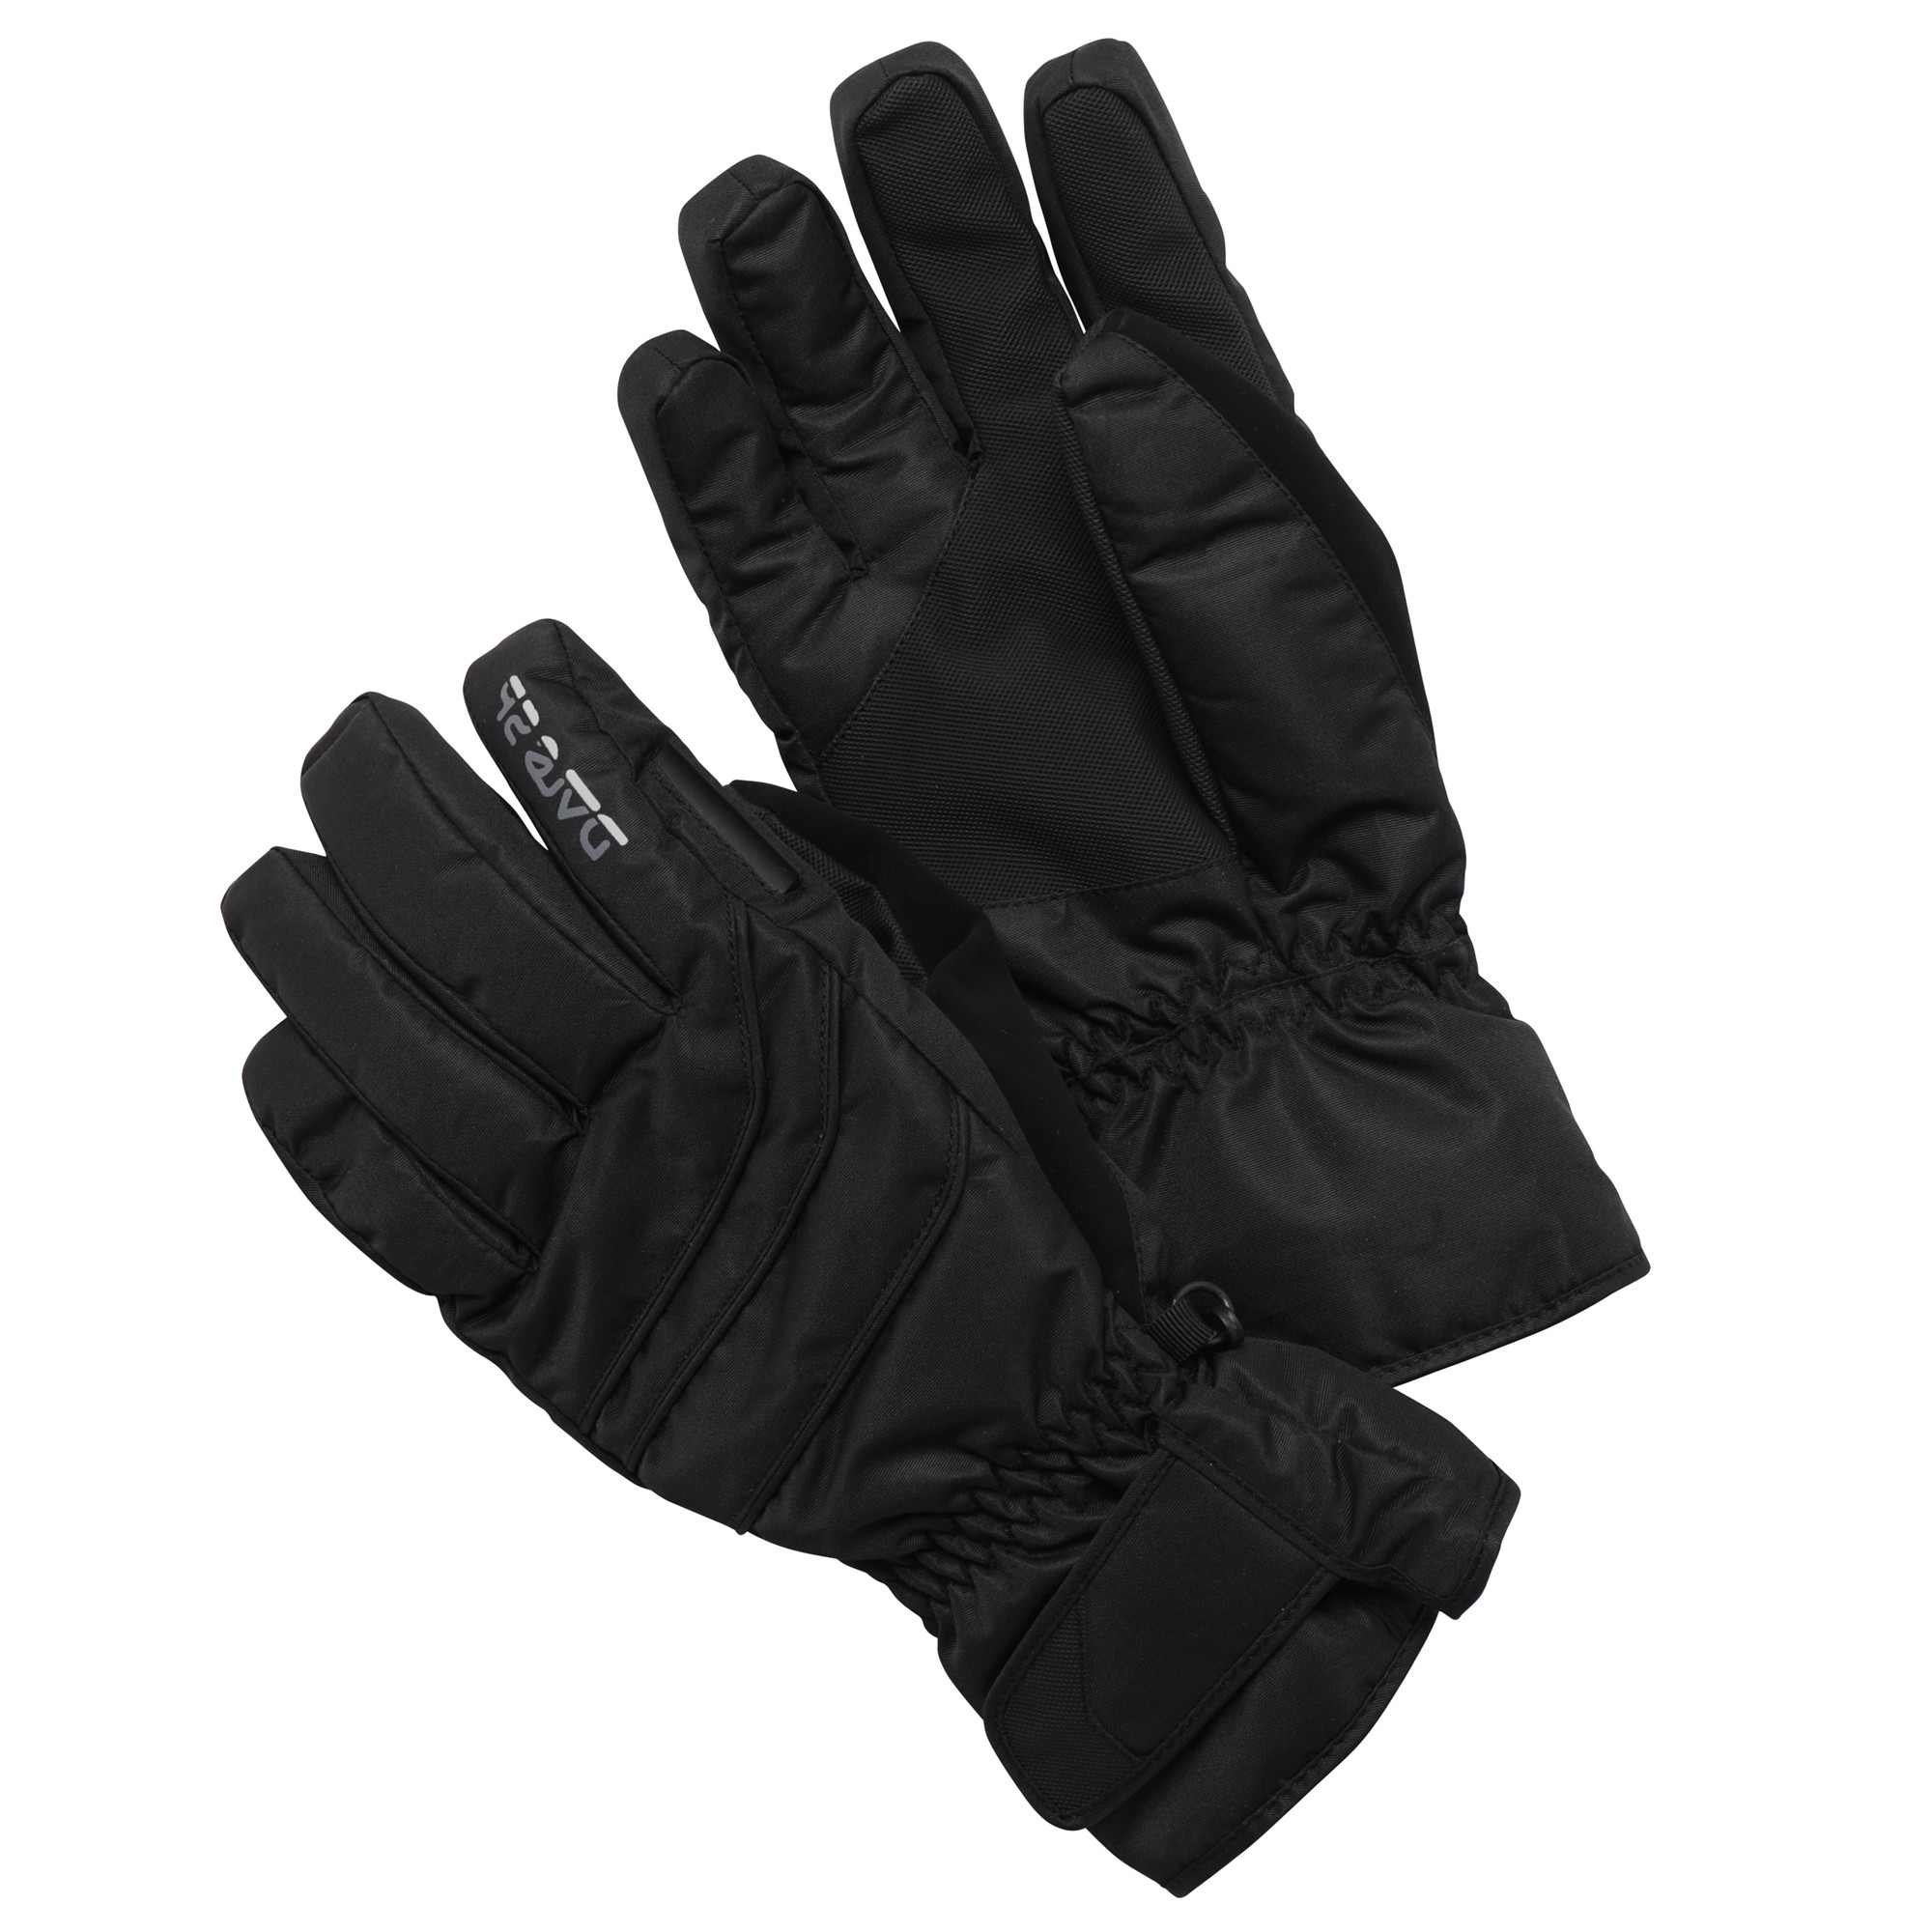 Dare2b Swerve Men's Ski Gloves from Dare2b for £25.00